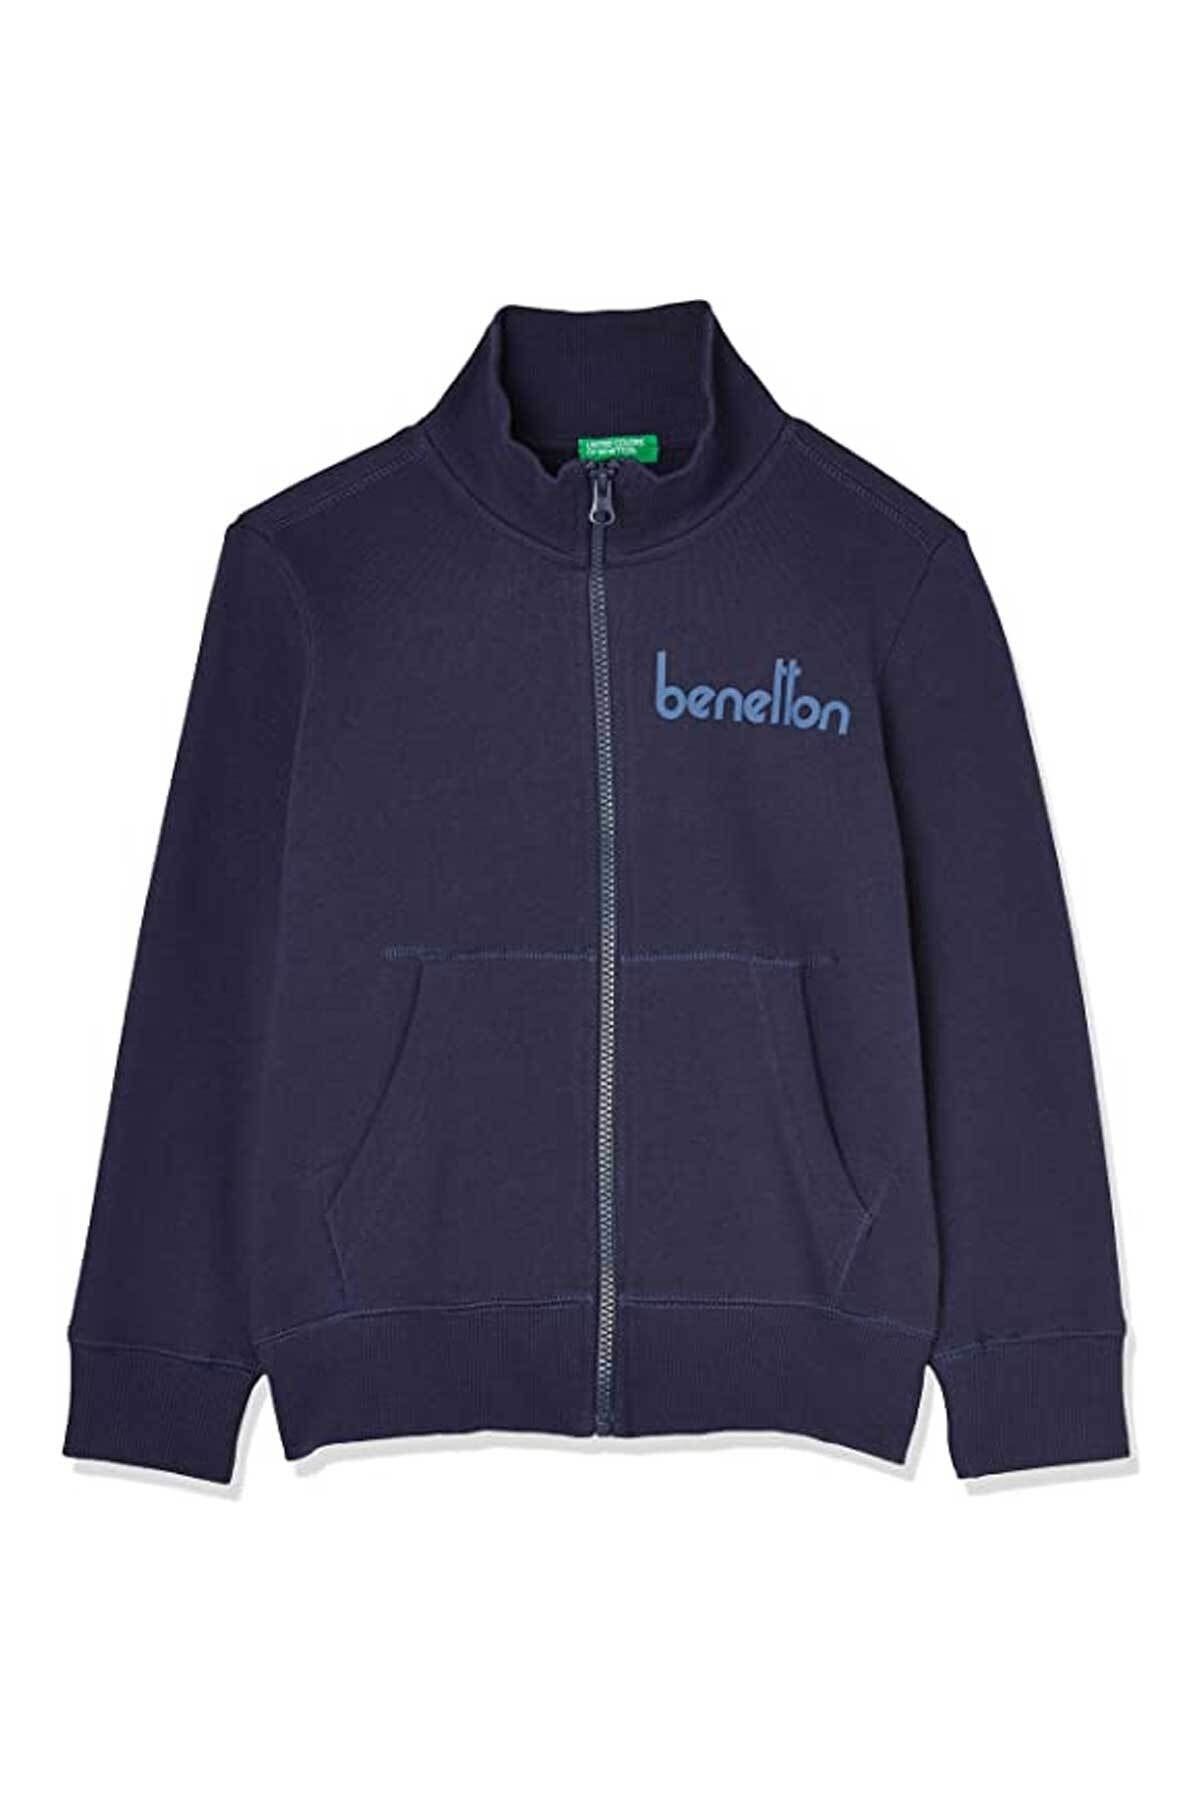 Benetton Çocuk Fermuarlı Sweatshirt 222a3j68c502d